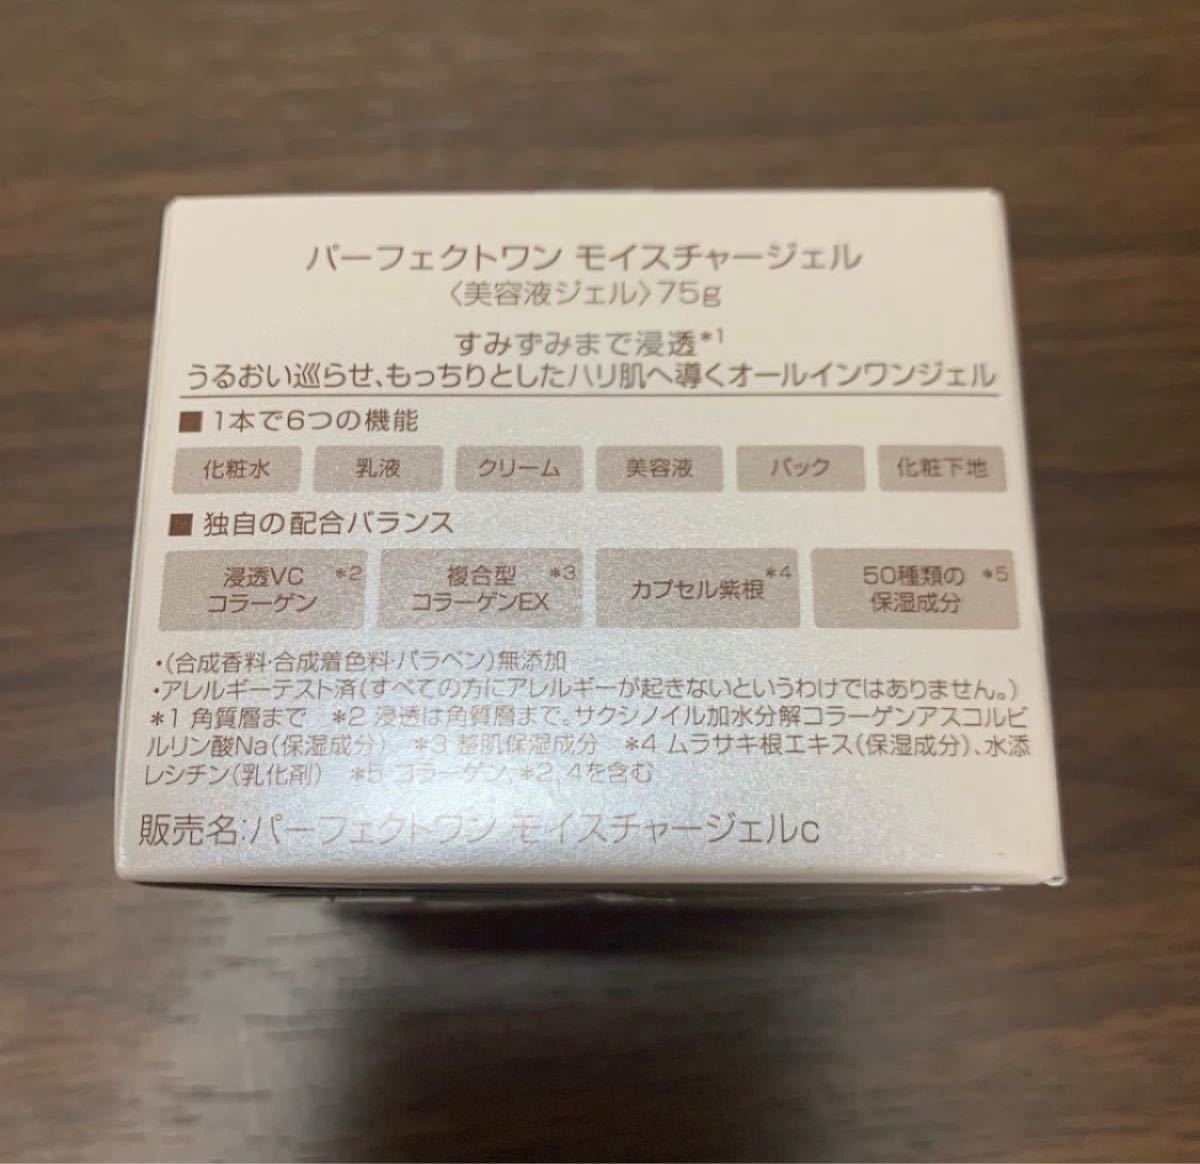 新品未開封 新日本製薬 パーフェクトワン モイスチャージェル 75g×2箱セット